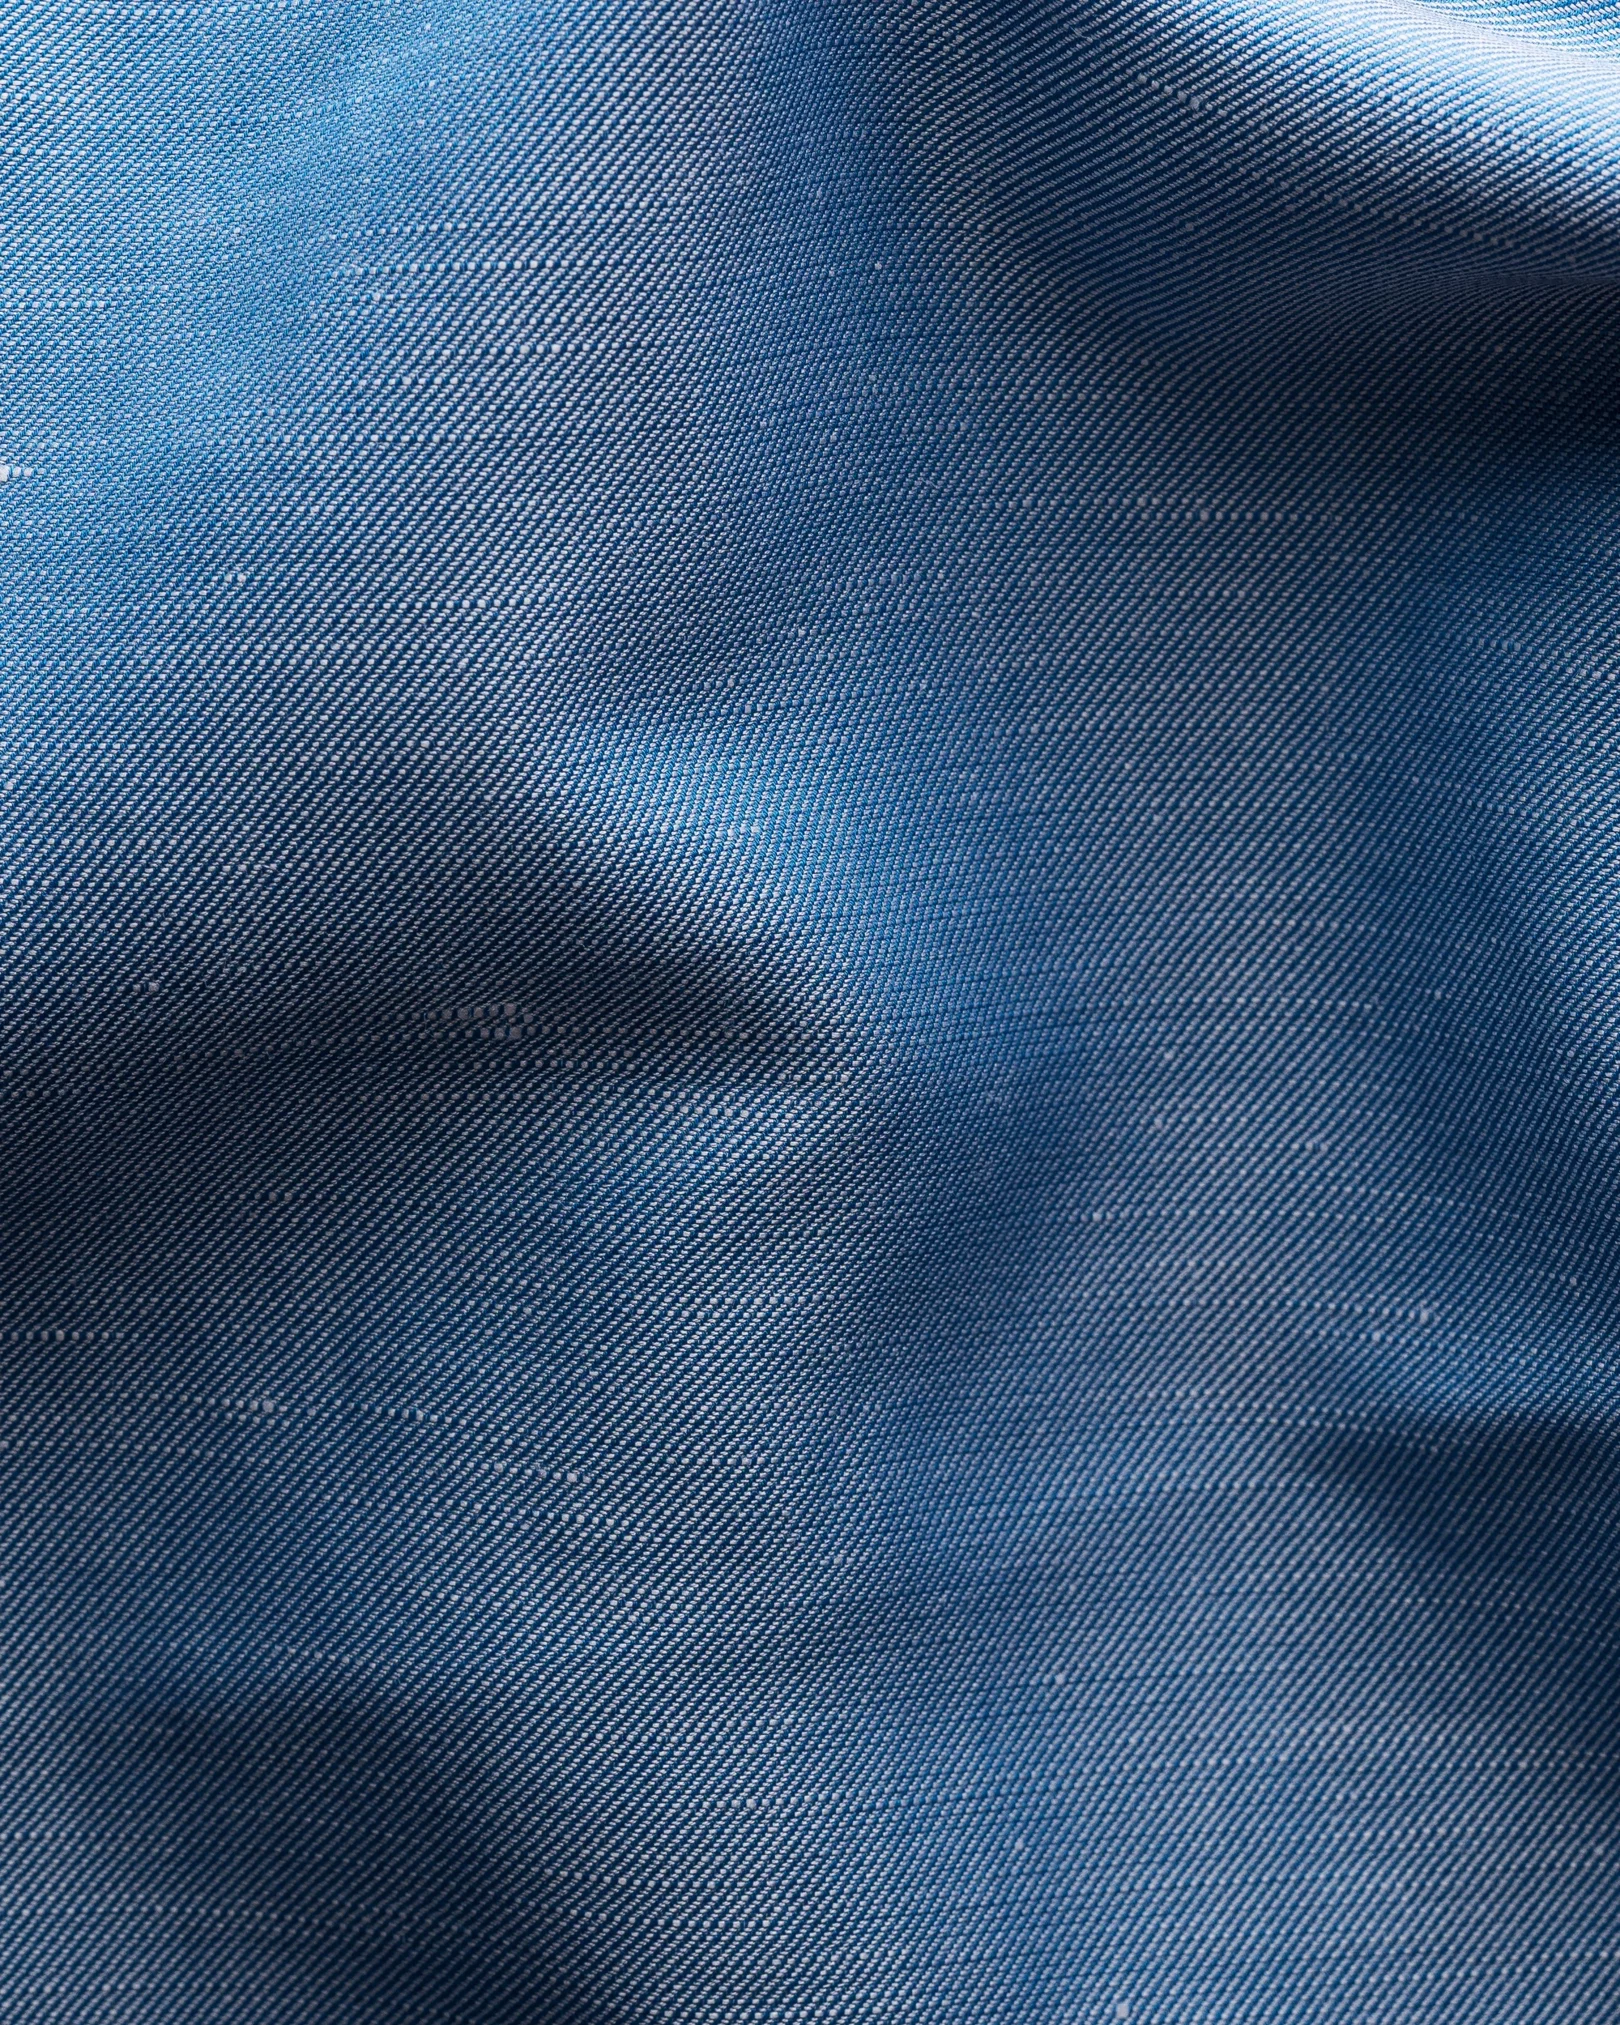 Eton - mid blue textured twill cotton silk blend